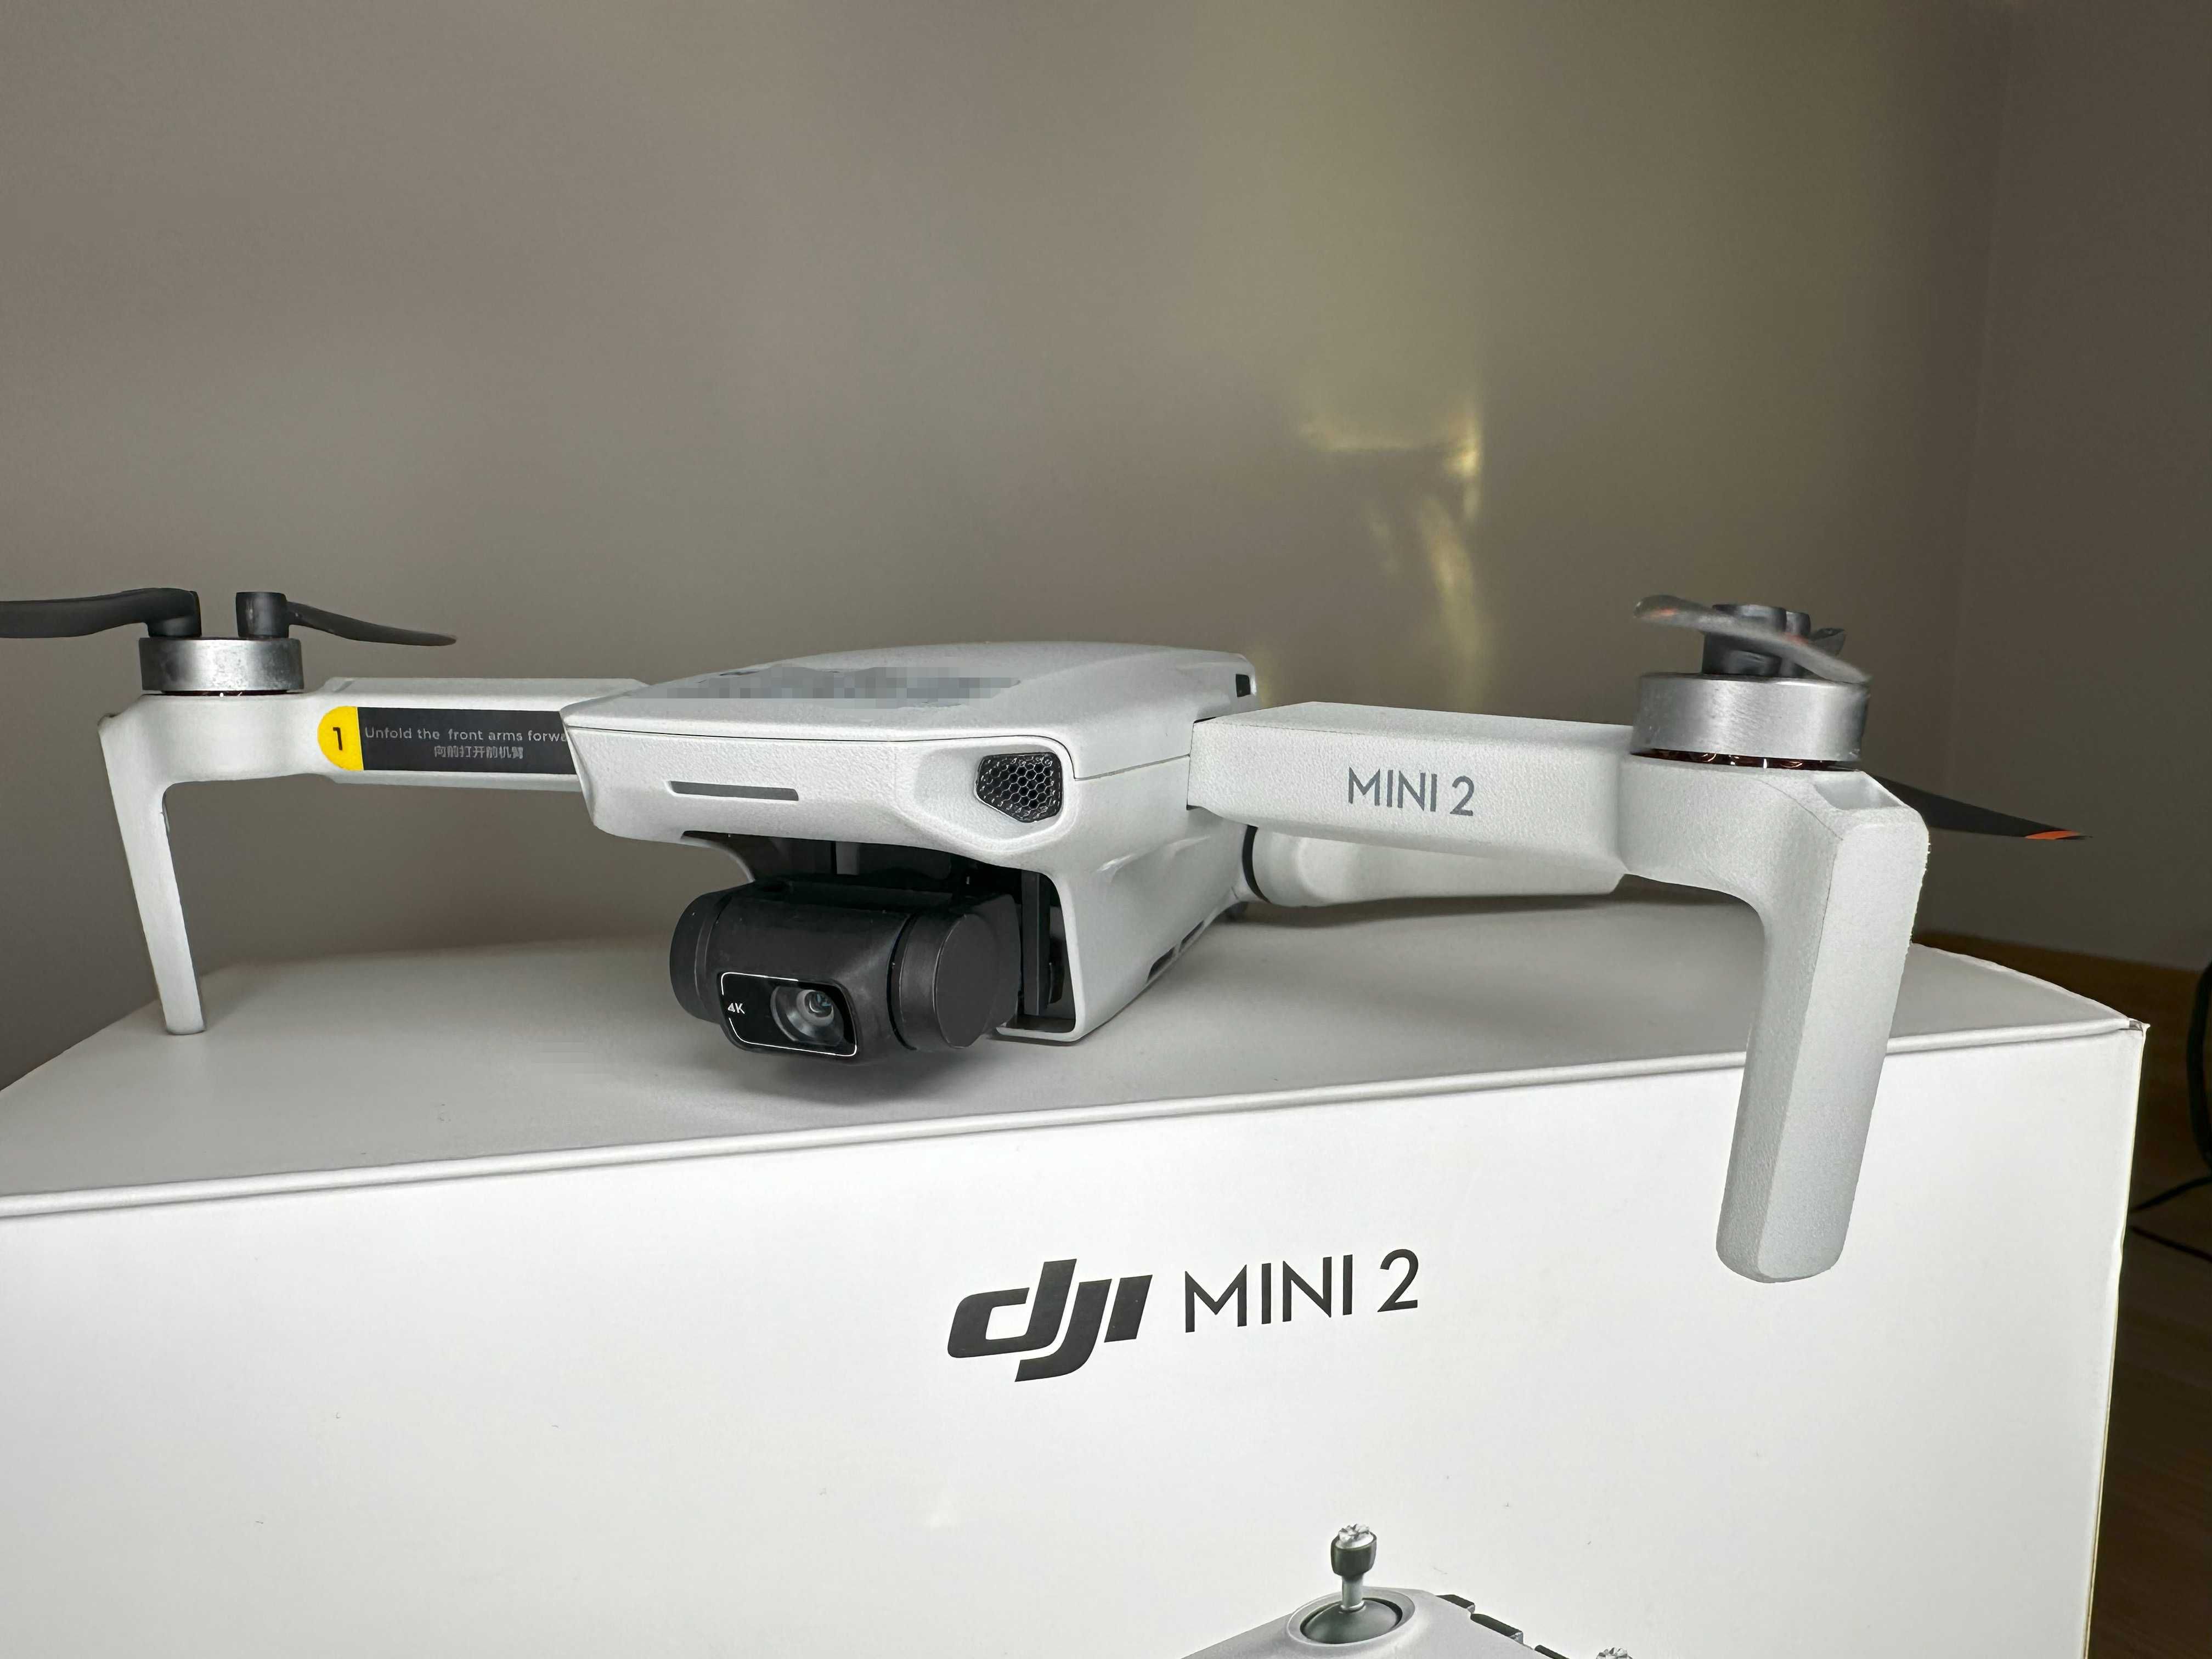 Dron Dji mini 2 FMC x2 6 baterii, filtry hardcase mega zestaw jak nowy